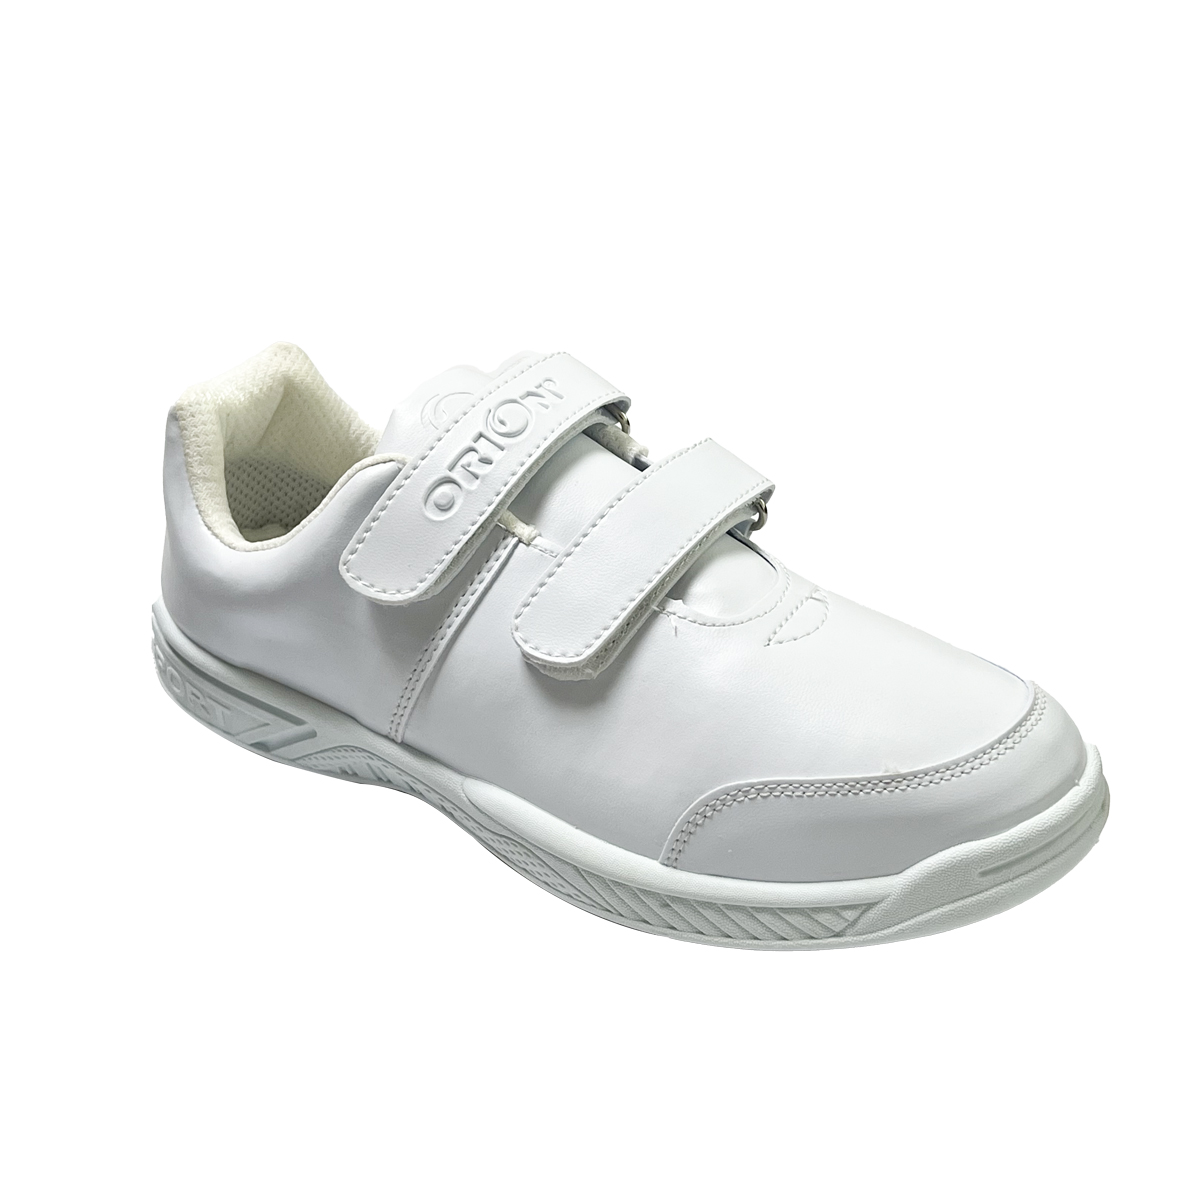 School Shoe (Size: 27-30)